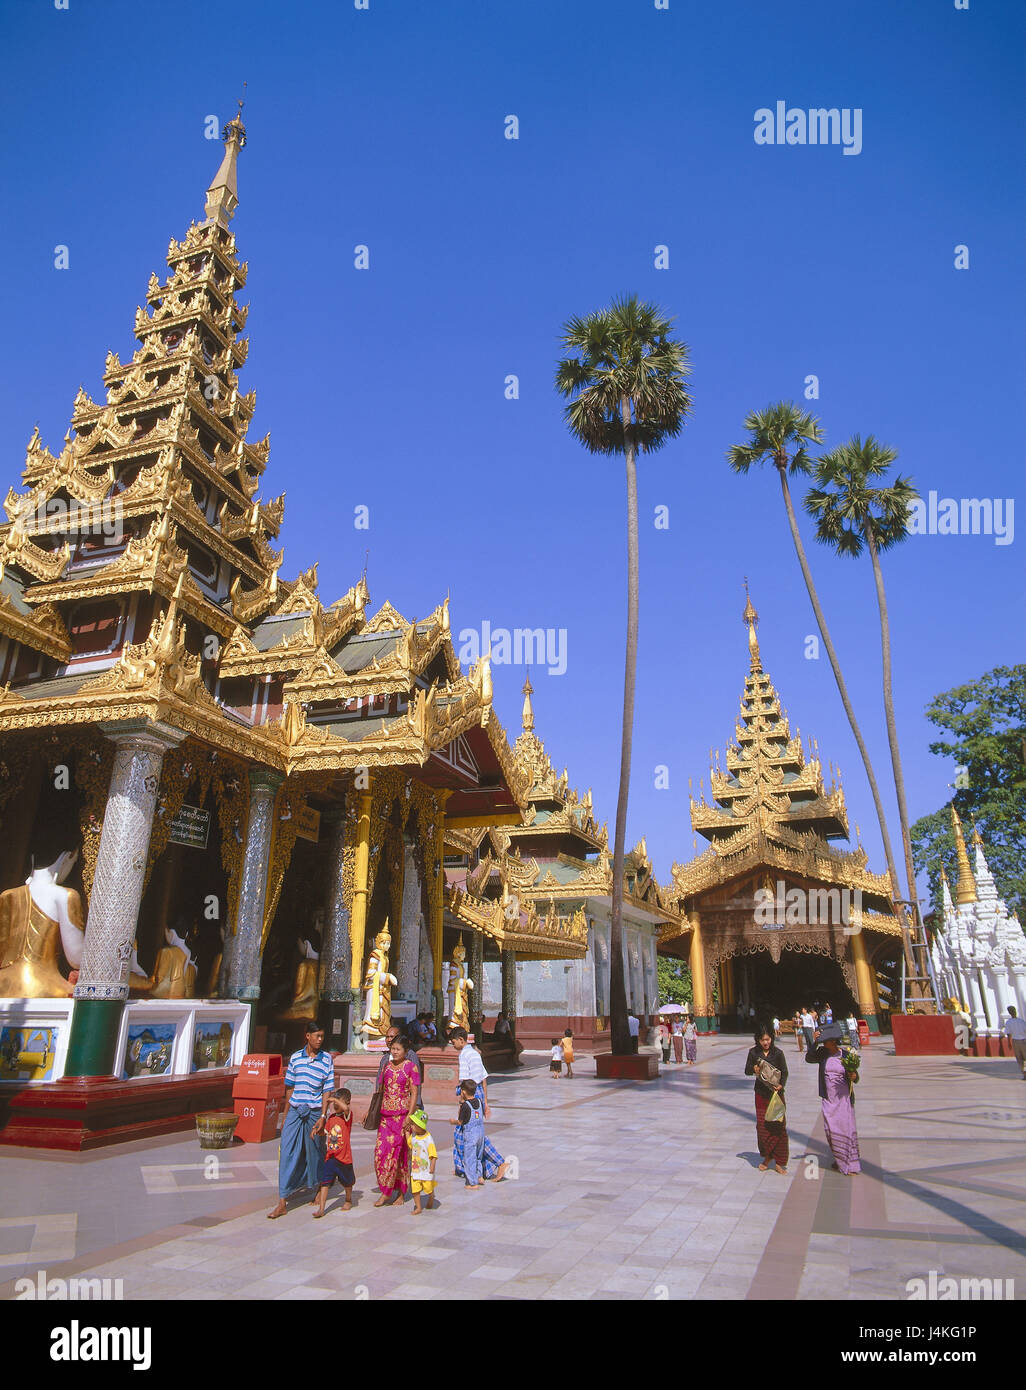 La Birmania, Rangoon, Shwedagon Paya pagoda, gli stupa, visitatore che nessun modello di rilascio! Asia, Sud-est asiatico, Indocina, Birmania, Pyidaungsu Myanmar Naingngandaw, Yangon, città capitale, parte della città, luogo di interesse, l'UNESCO-patrimonio culturale mondiale, Shwedagon pagoda, dora nostra, oro, Golden, strutture, architettura, tempio, tempio complesso, cortile interno, buddismo buddisti, fede, religione, luogo di pellegrinaggio, Pilgrim's Place, cultura Foto Stock